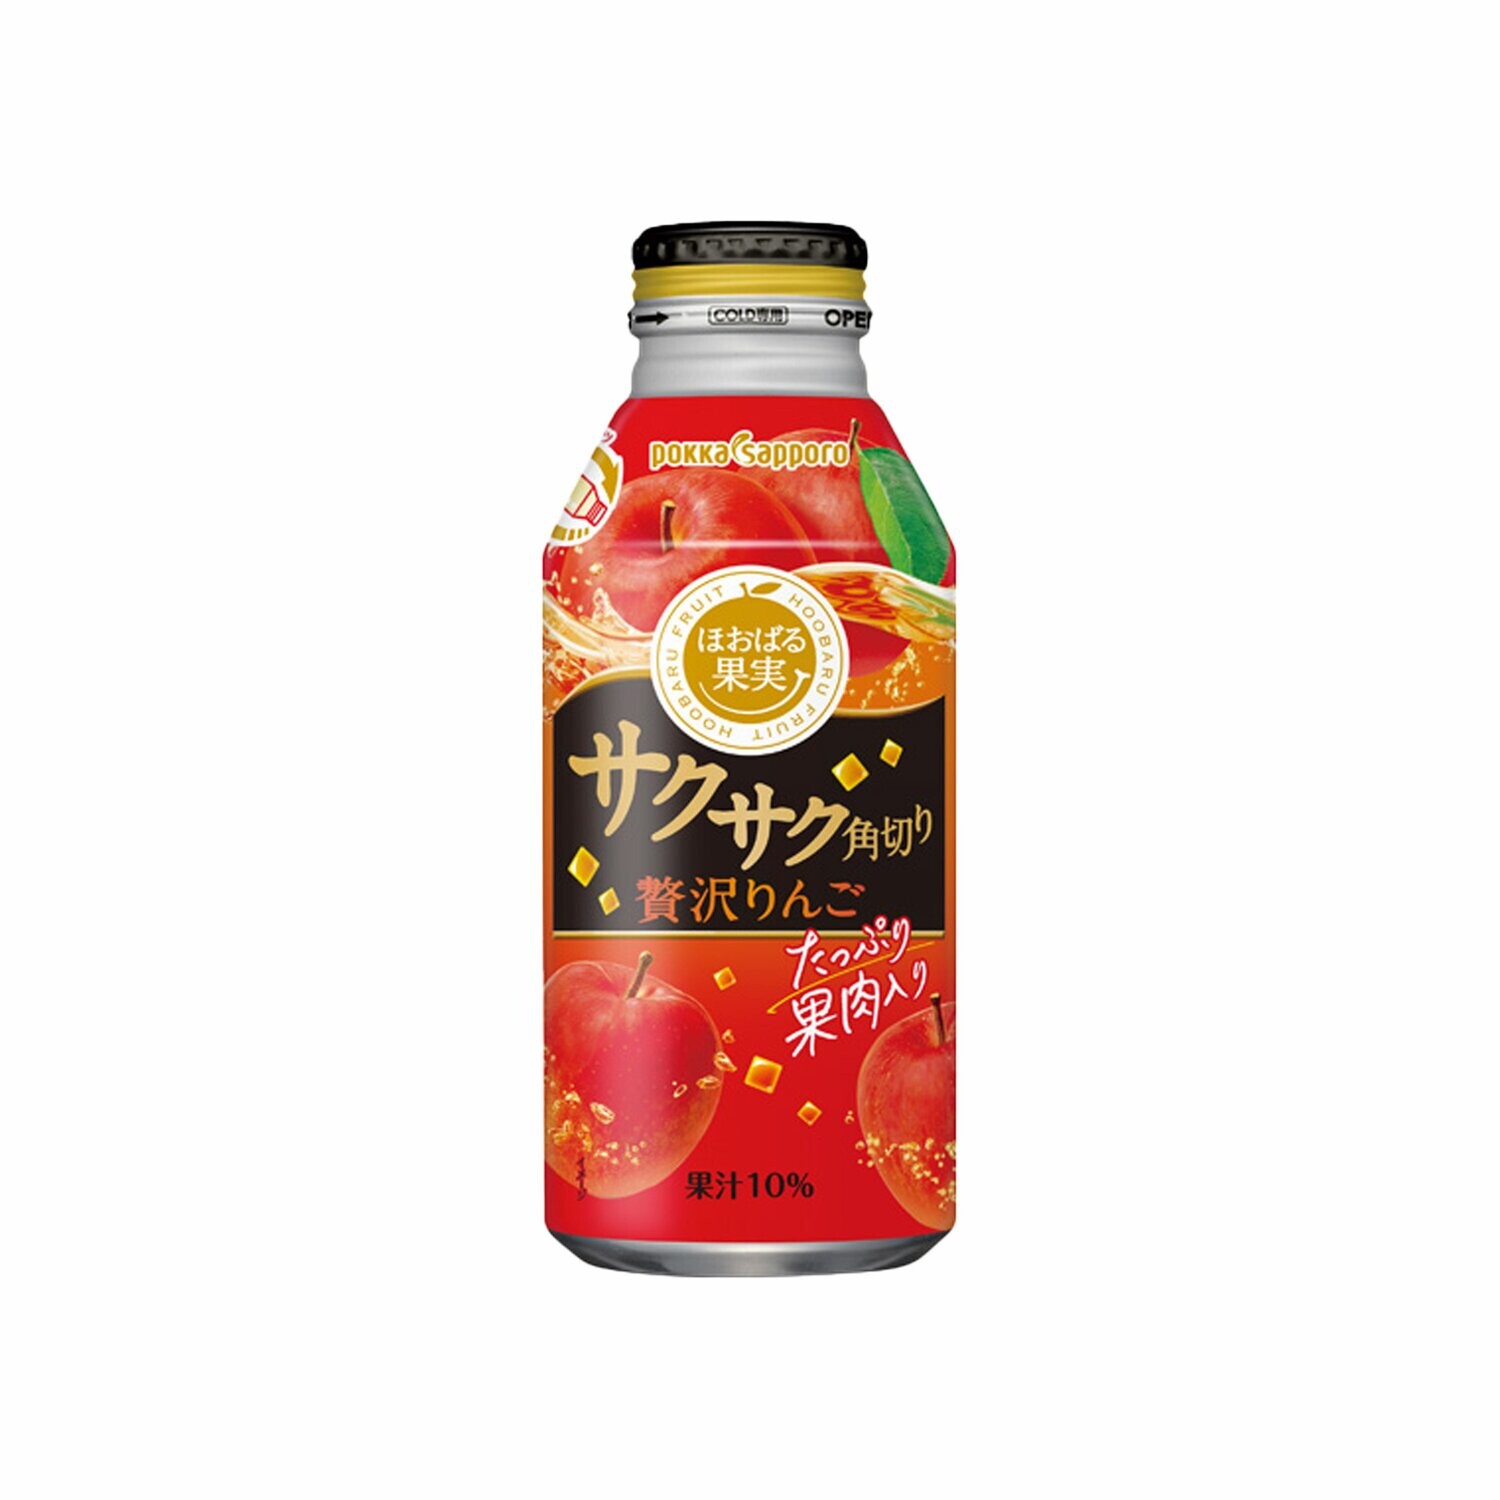 Pokka Sappora Apple Juice (400ML)